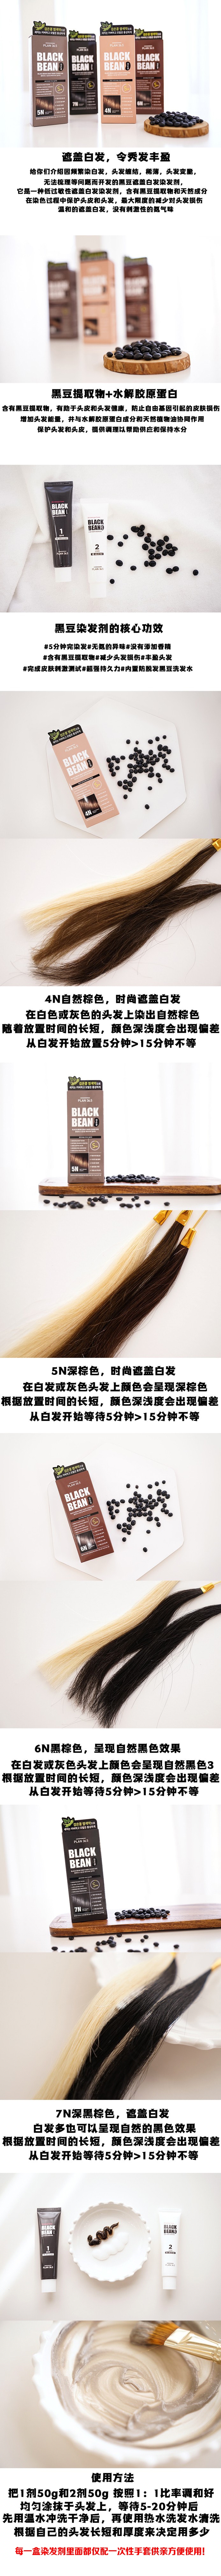 韩国 【黑豆染发】 Plan 36.5 黑豆 防脱发滋润染发剂 可染白发 #7N 柔黑色